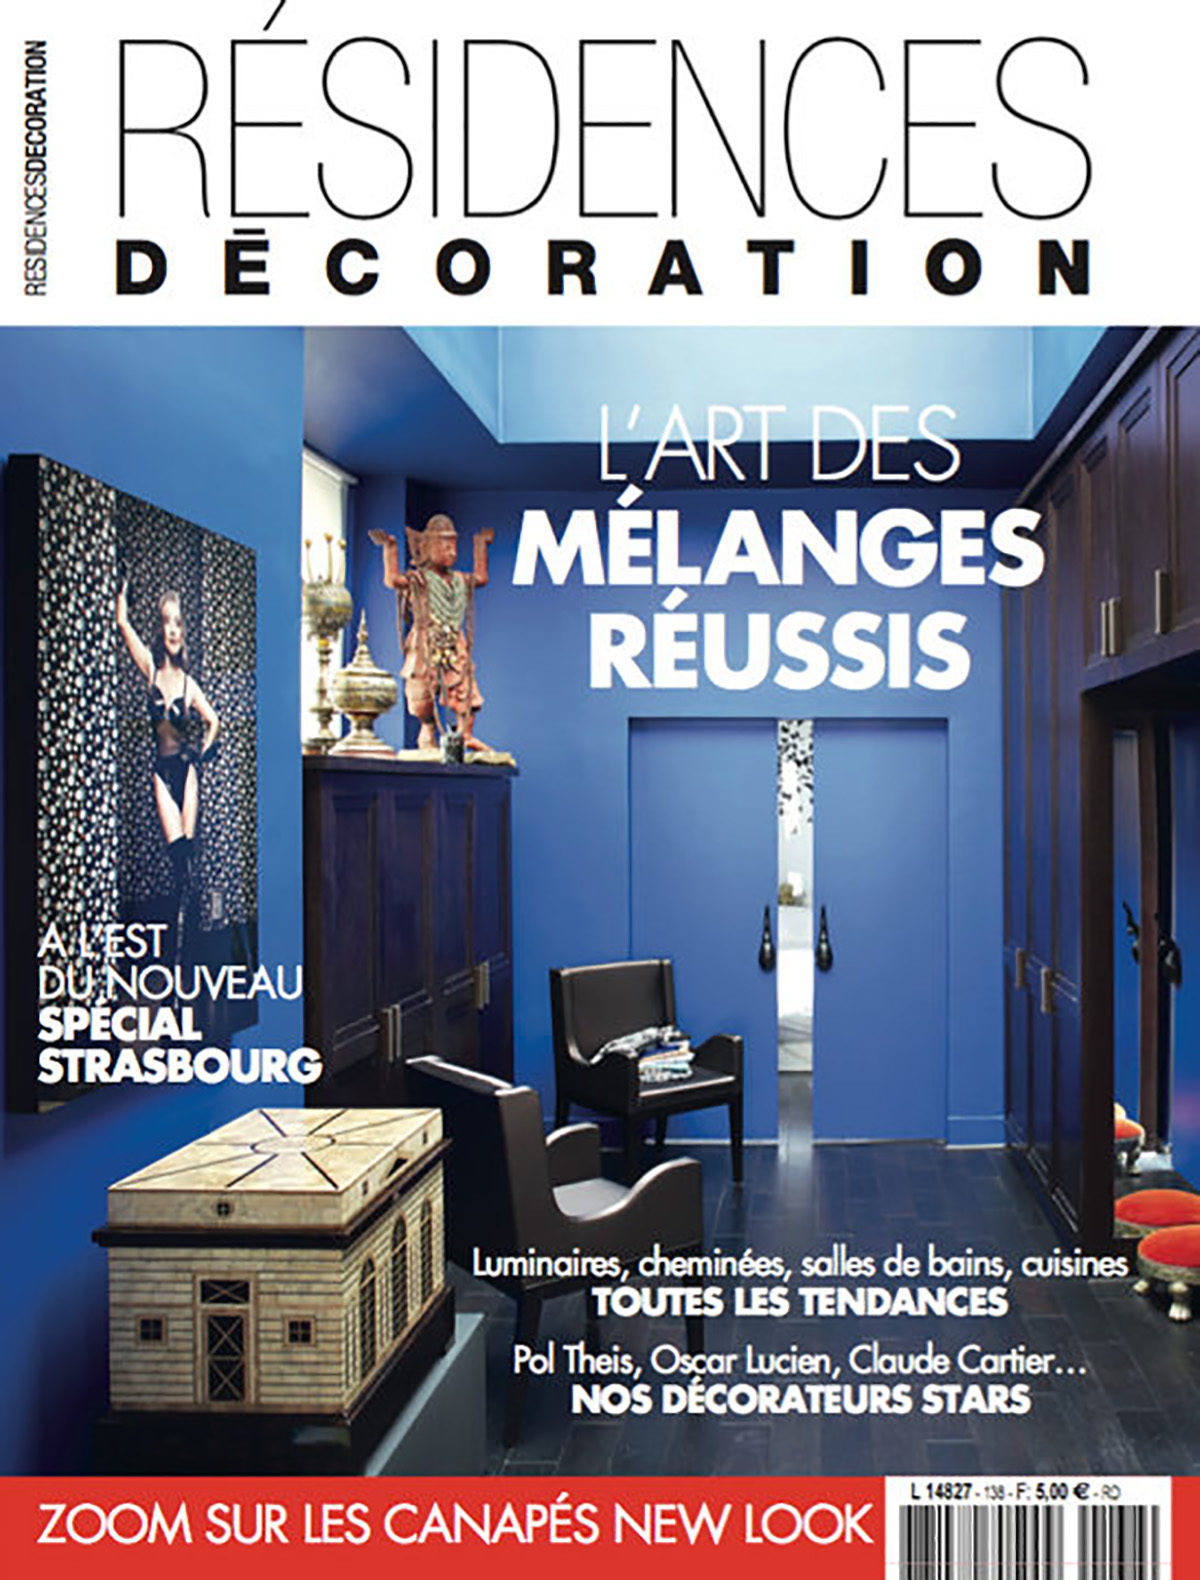 Parution presse Résidences Décoration 2017 Claude Cartier décoration architecte d'intérieur à Lyon.